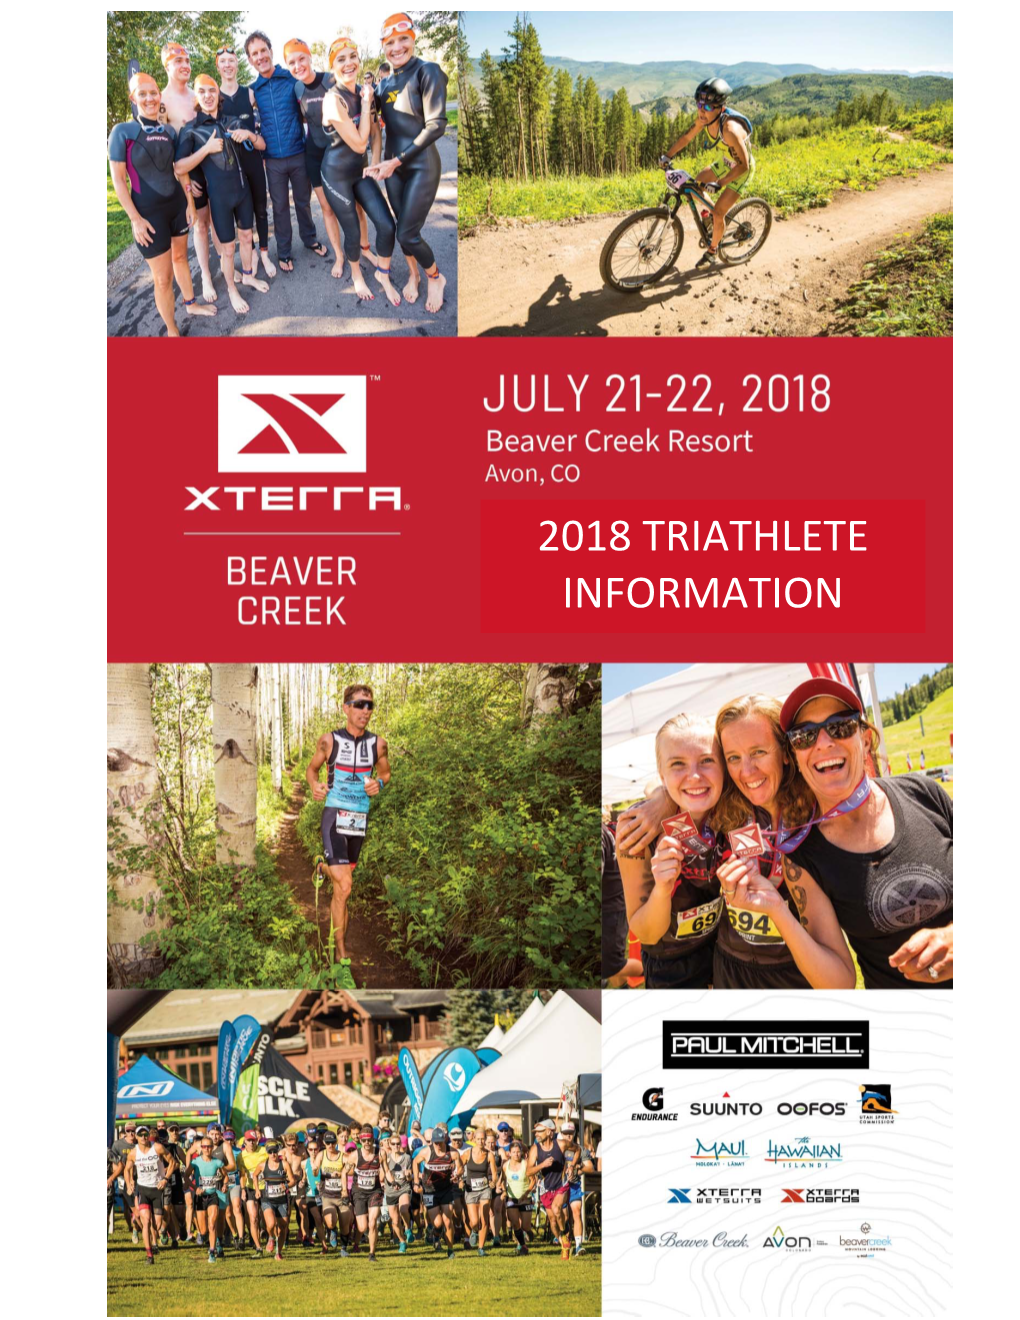 2018 Triathlete Information